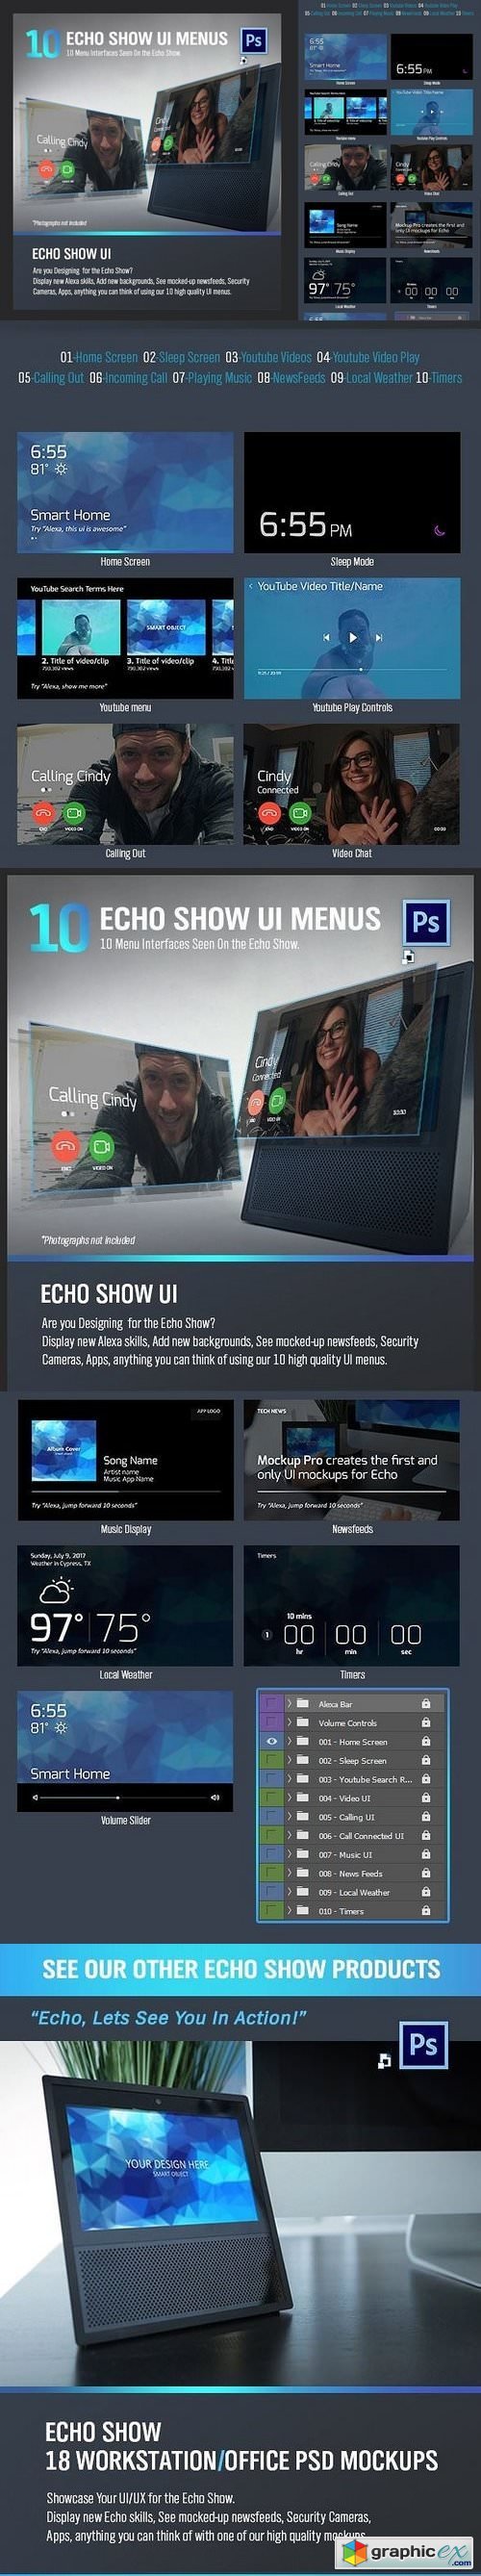 10 Echo Show UI Menus